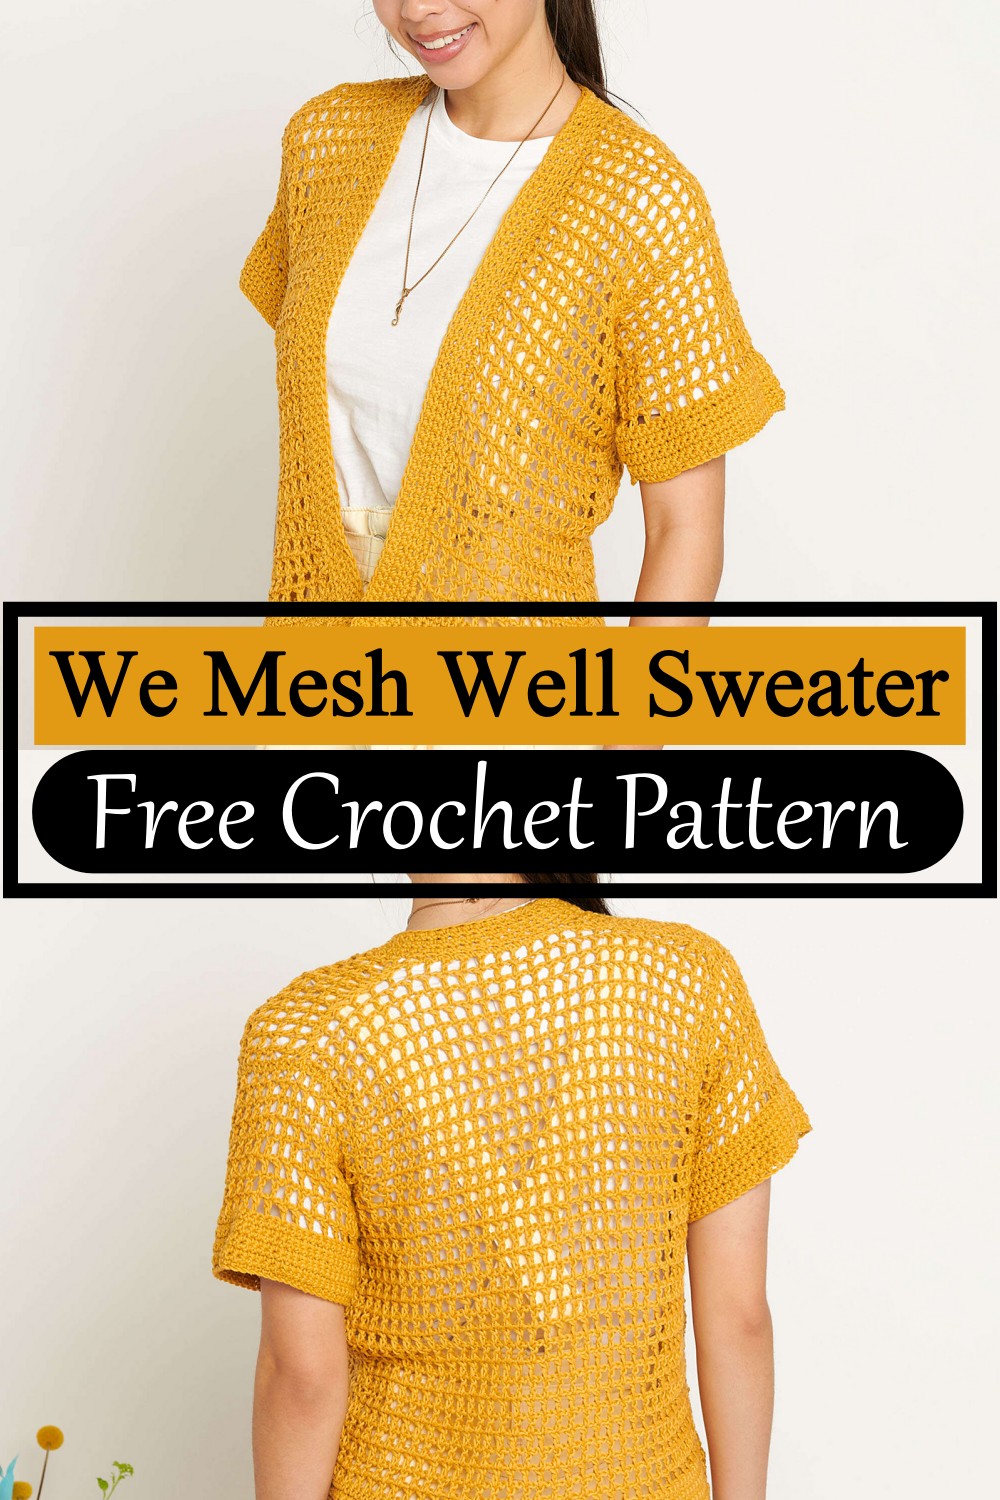 We Mesh Well Sweater